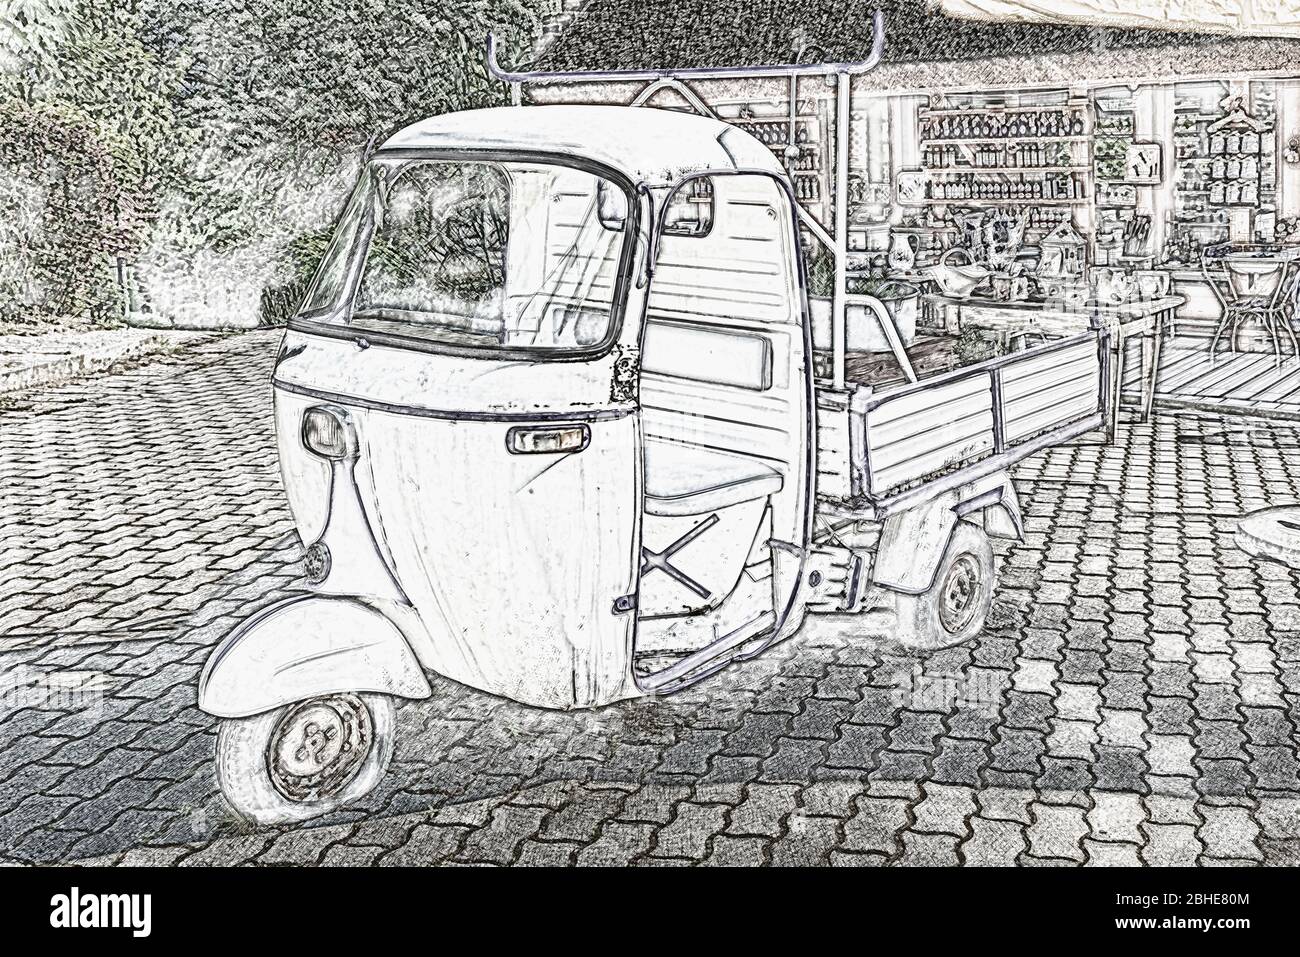 Das alte leichte Nutzfahrzeug Piaggio Ape ist Teil der Dekoration eines Ladens, der Lavendelprodukte verkauft, Tihany, Ungarn, Europa Stockfoto